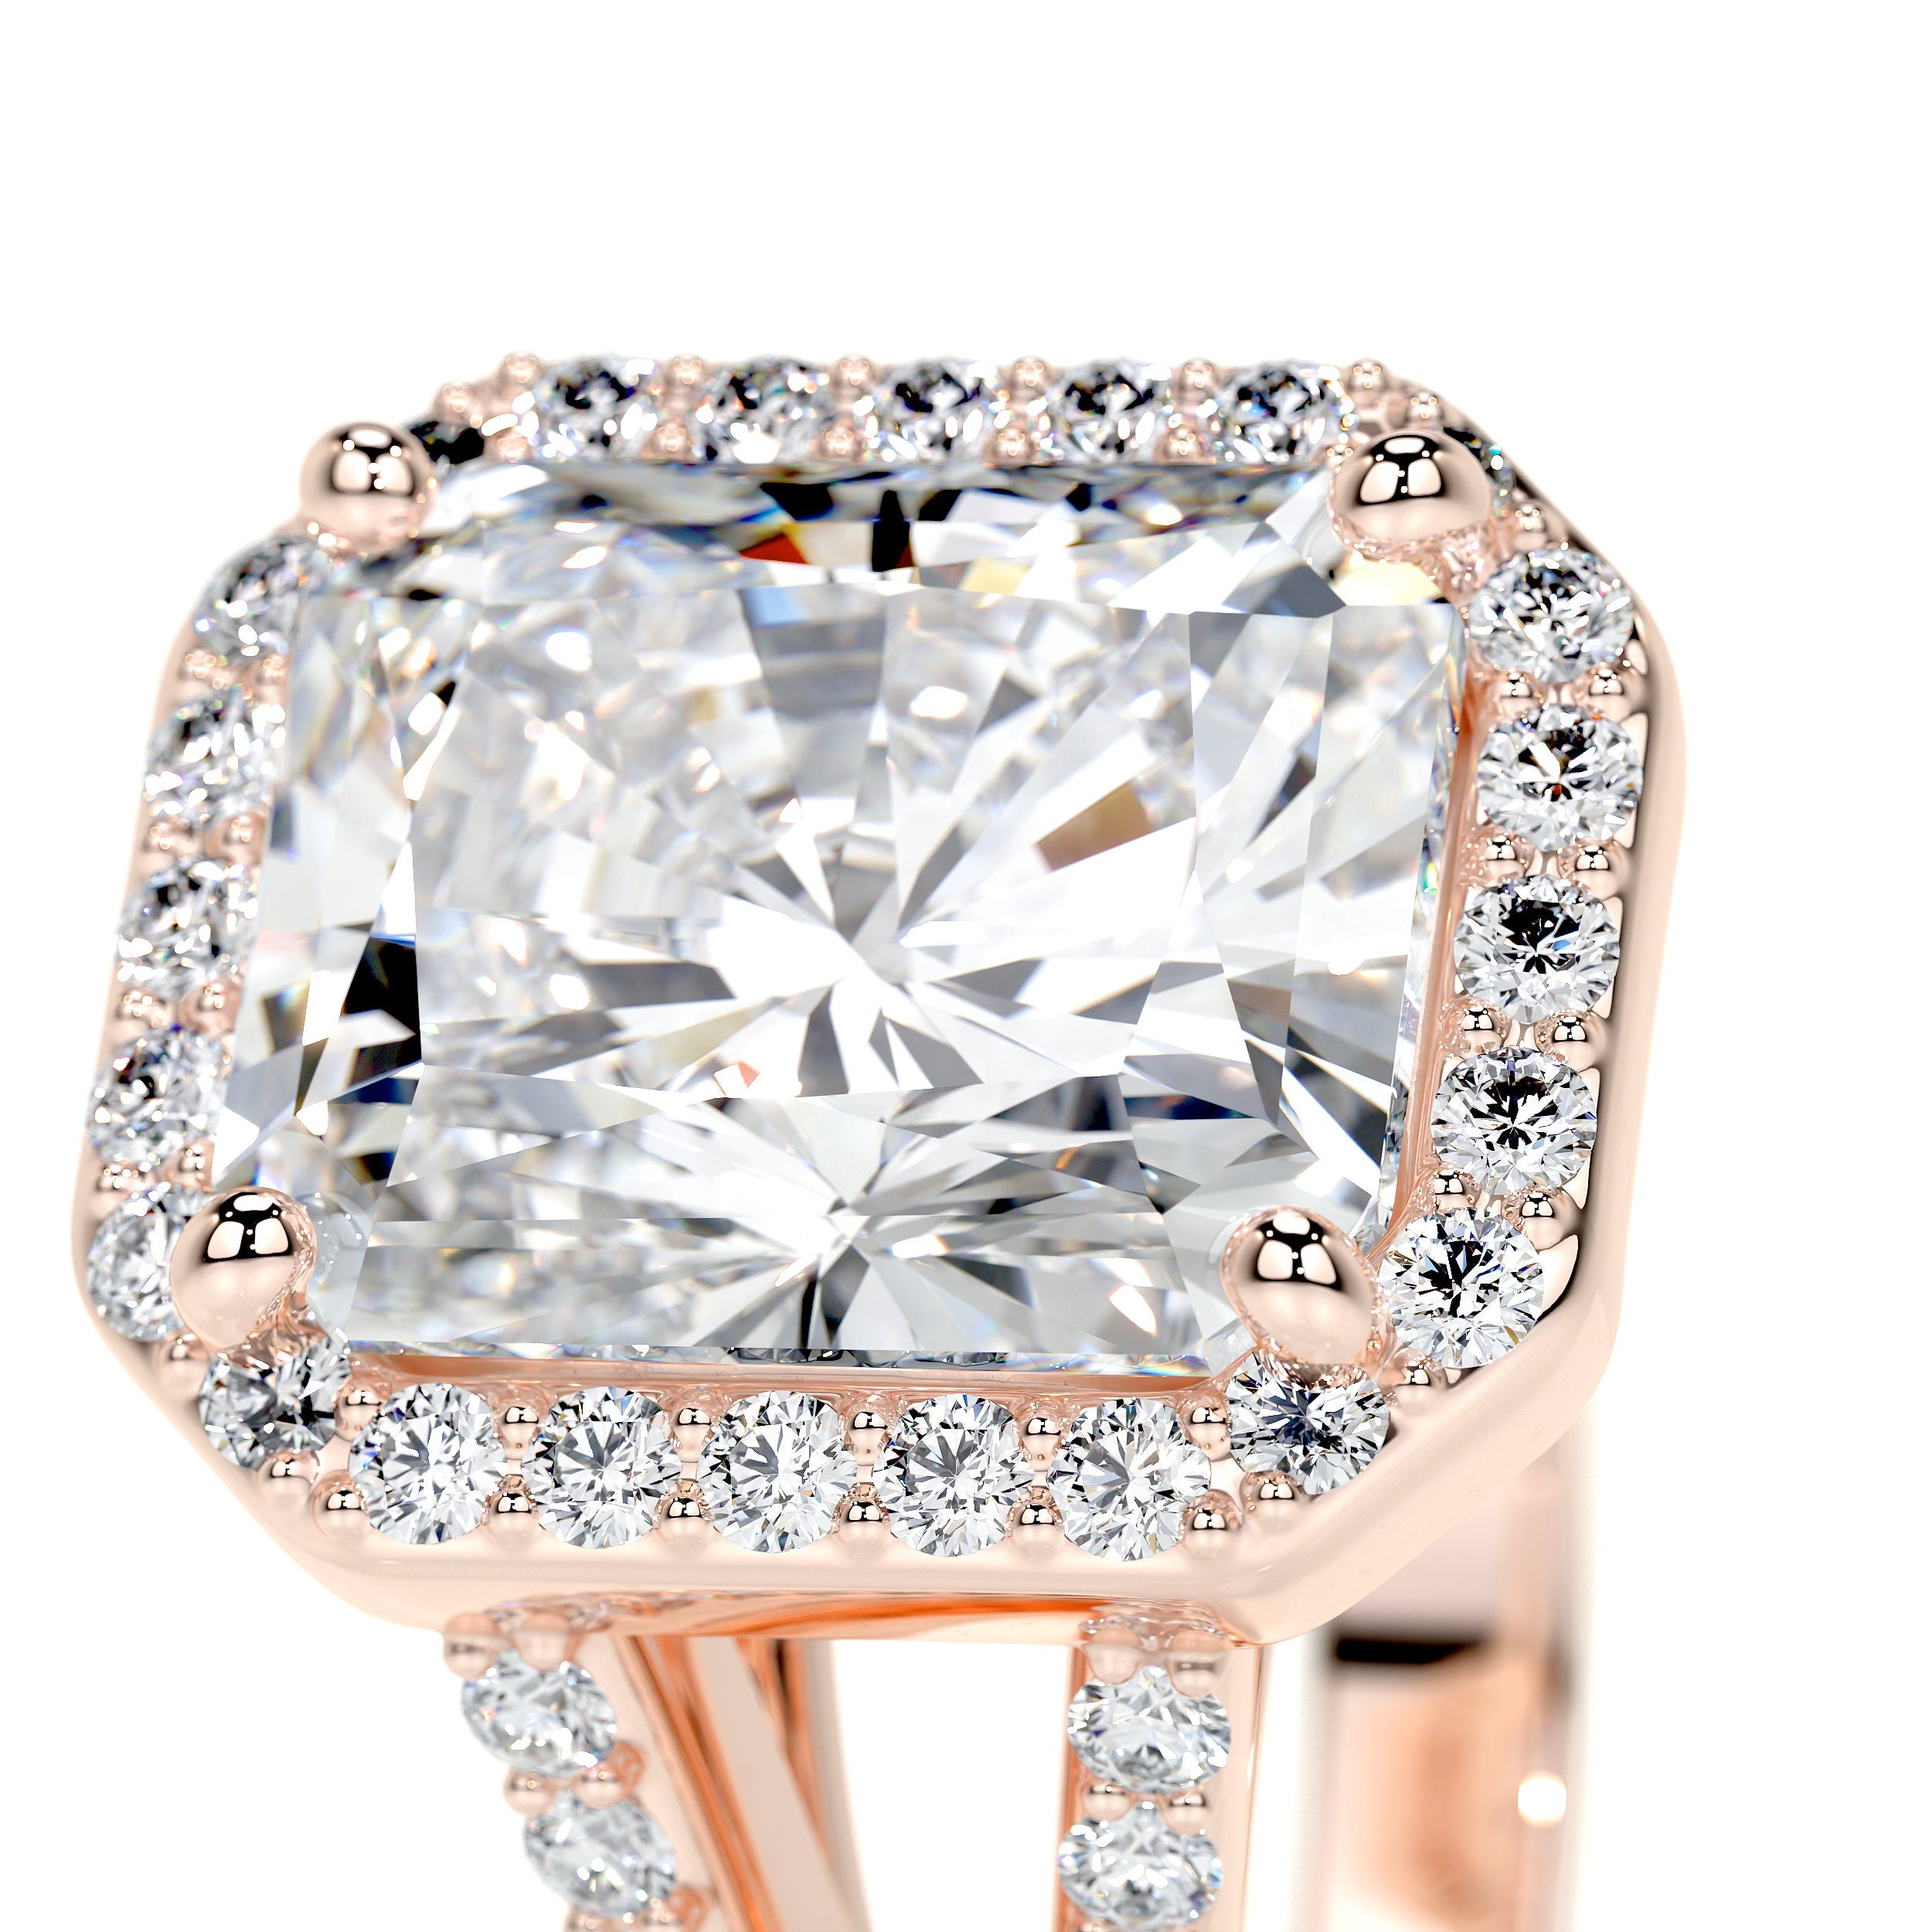 Marina Lab Grown Diamond Ring   (3.5 Carat) -14K Rose Gold